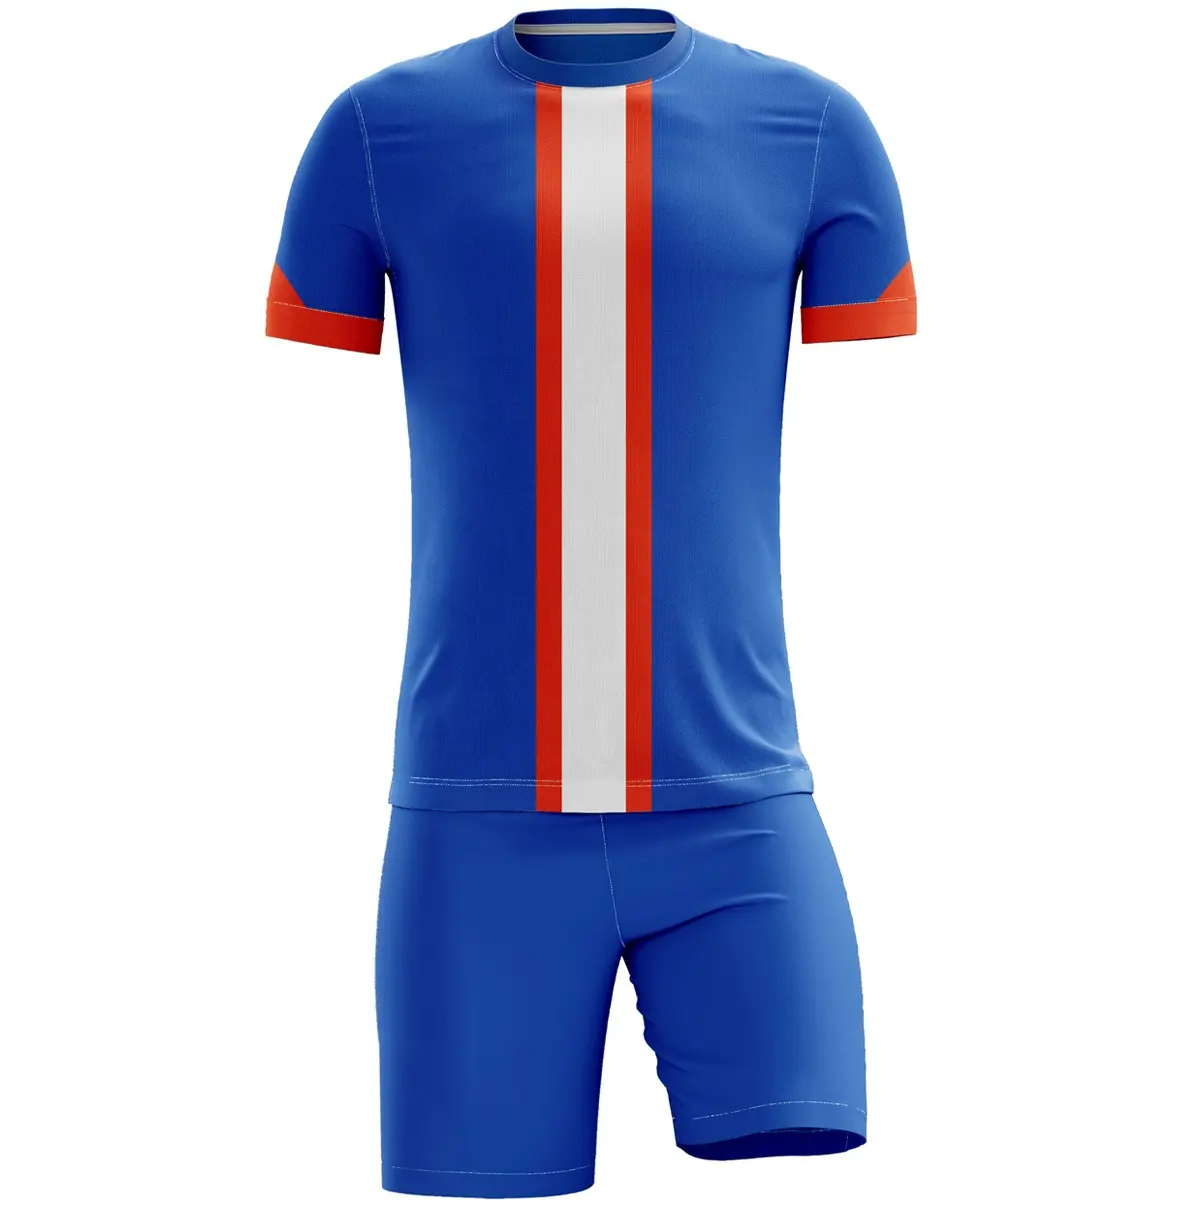 Fußball trikots ets Sublimation Soccer Wear für Herren/maßge schneiderte Fußball trikots für Erwachsene für Teamwear